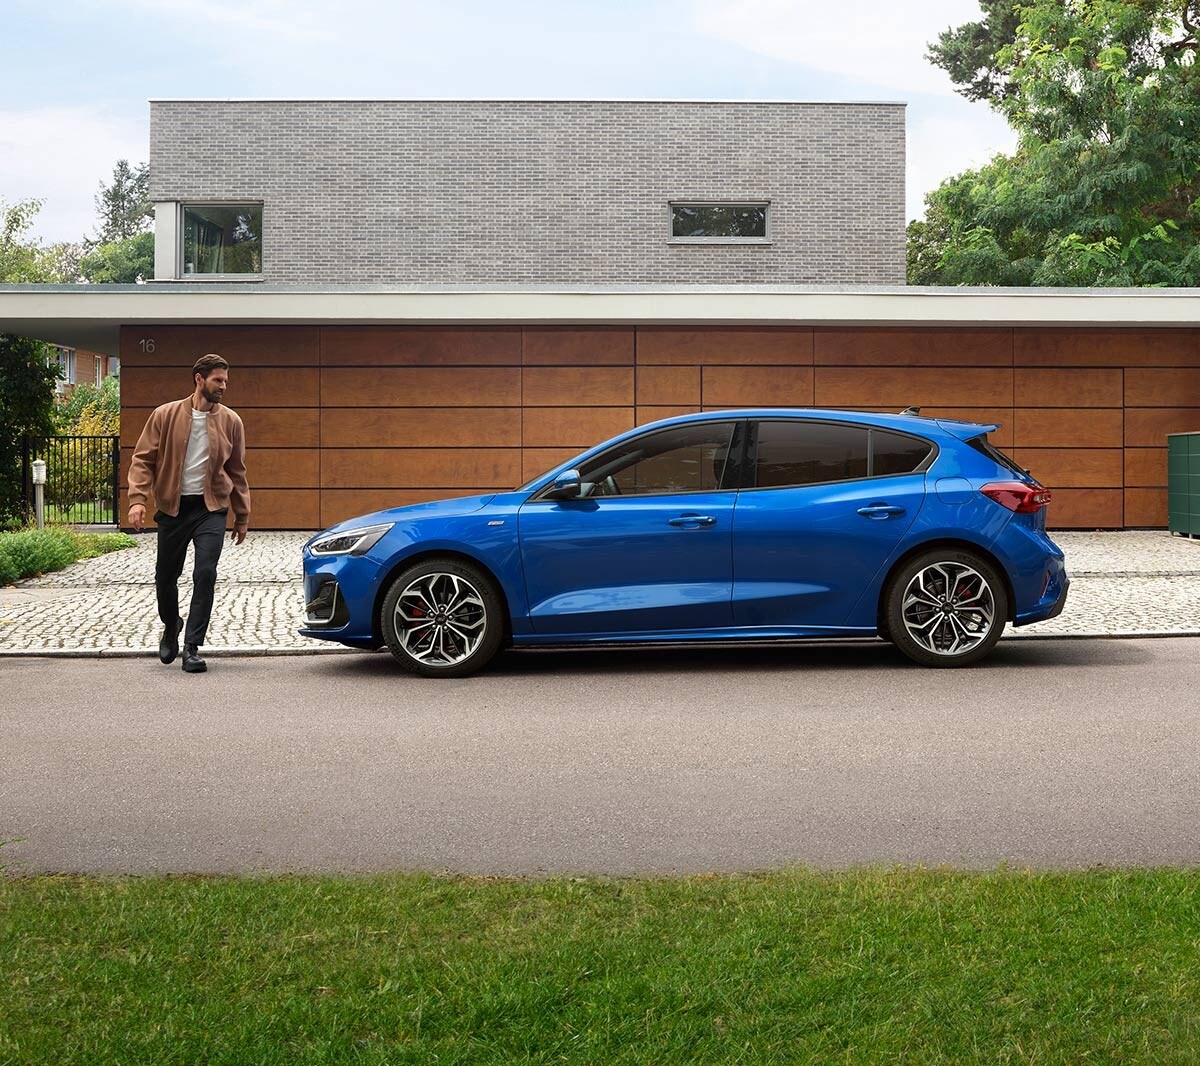 Ford Focus couleur bleue. Vue latérale, garée devant une maison moderne. Un homme court à côté.